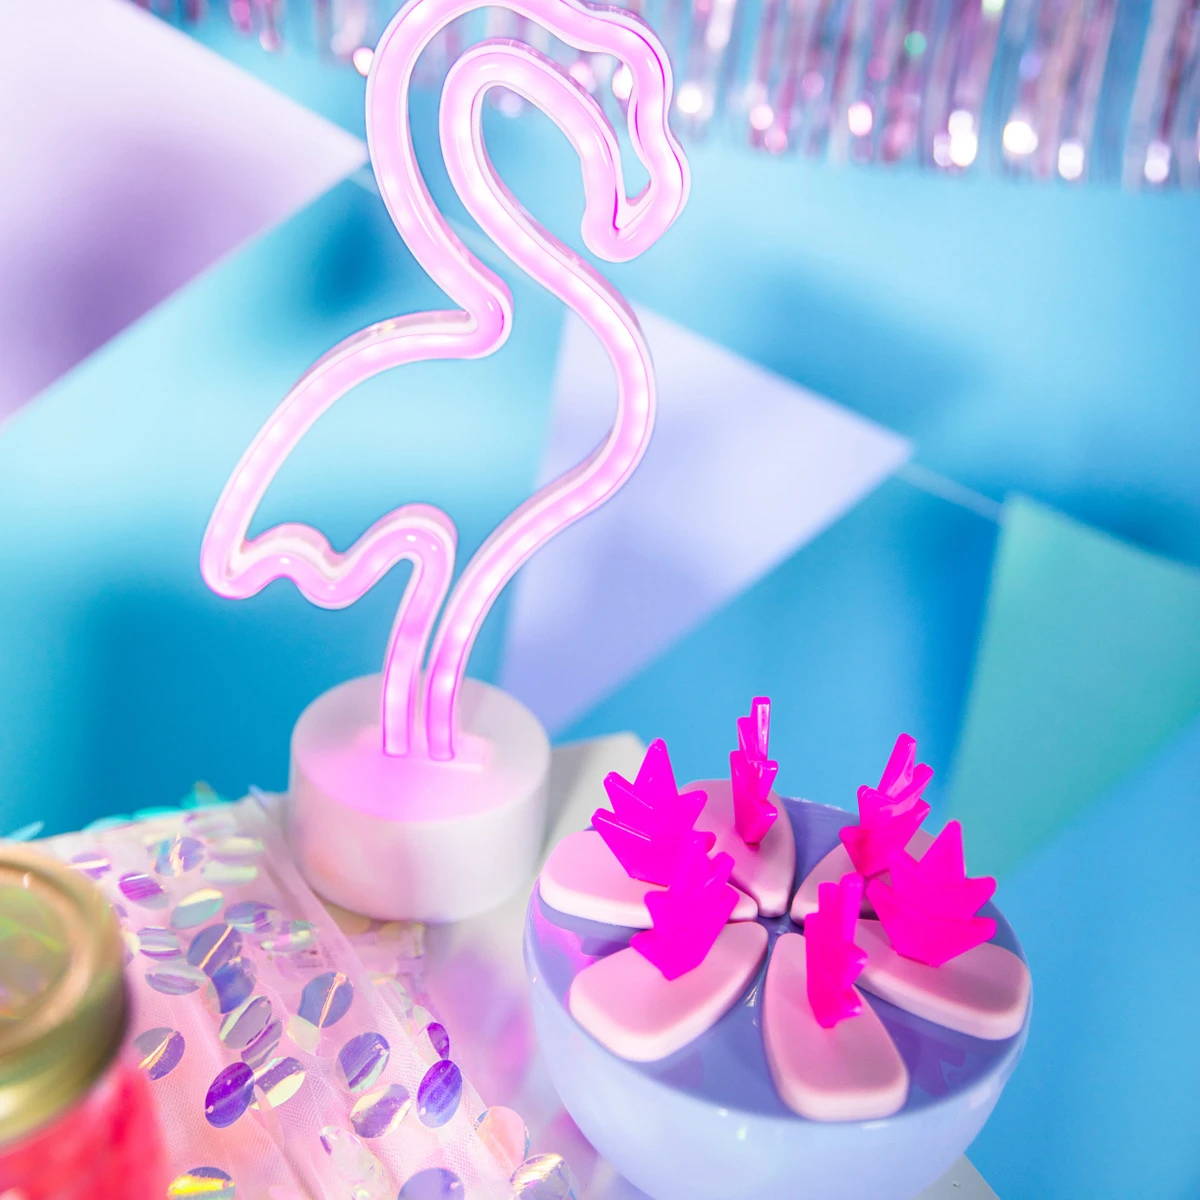 Flamingo neonlys ved siden av en bolle med flamingo-formede drikkestirere, og tilfører en pulserende rosa glød til innstillingen.